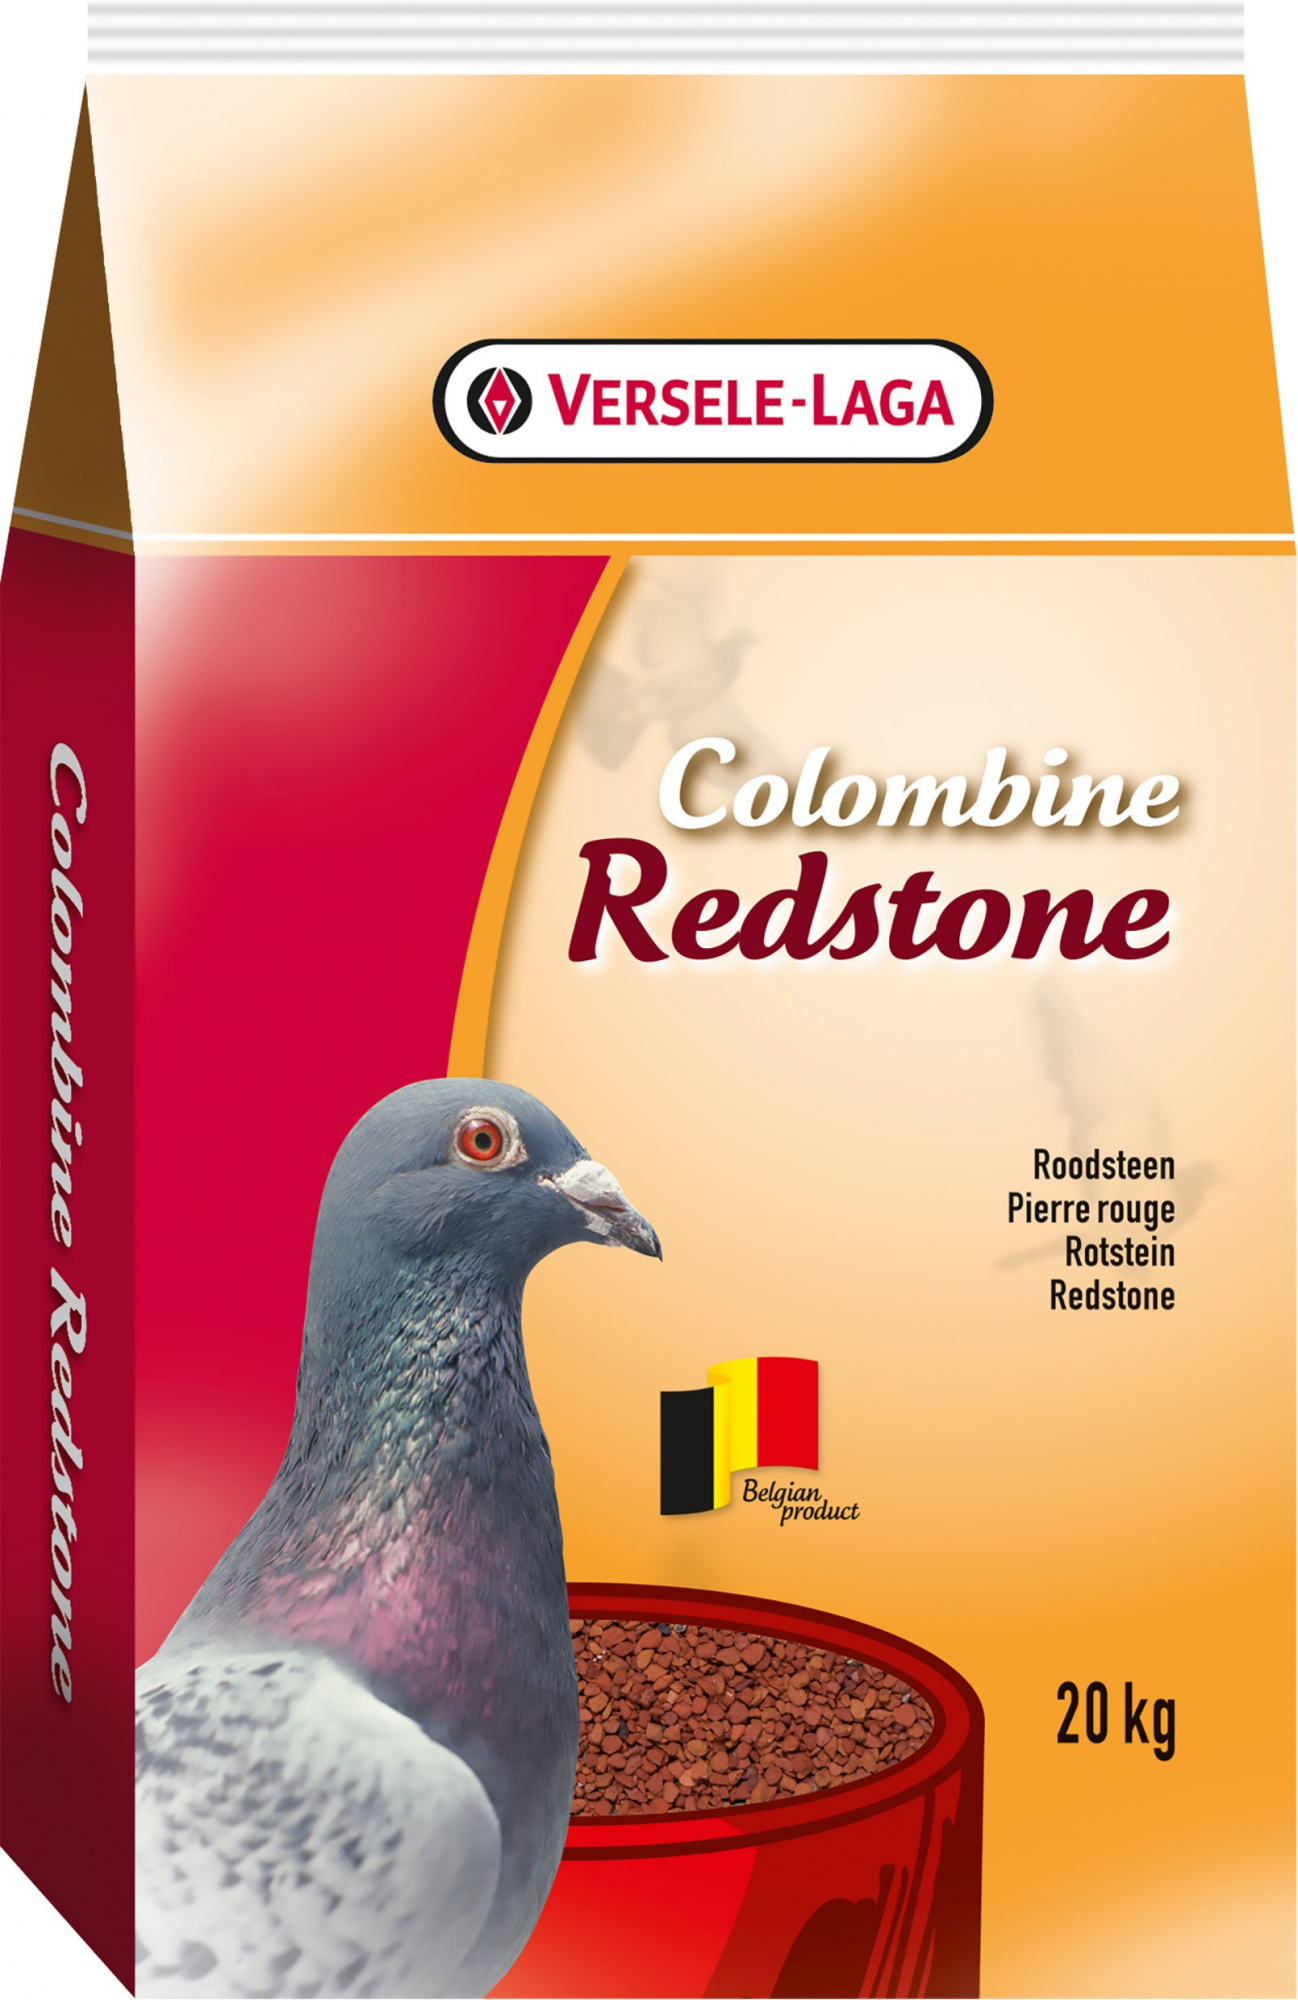 Colombine Red Stone für eine gute Verdauung